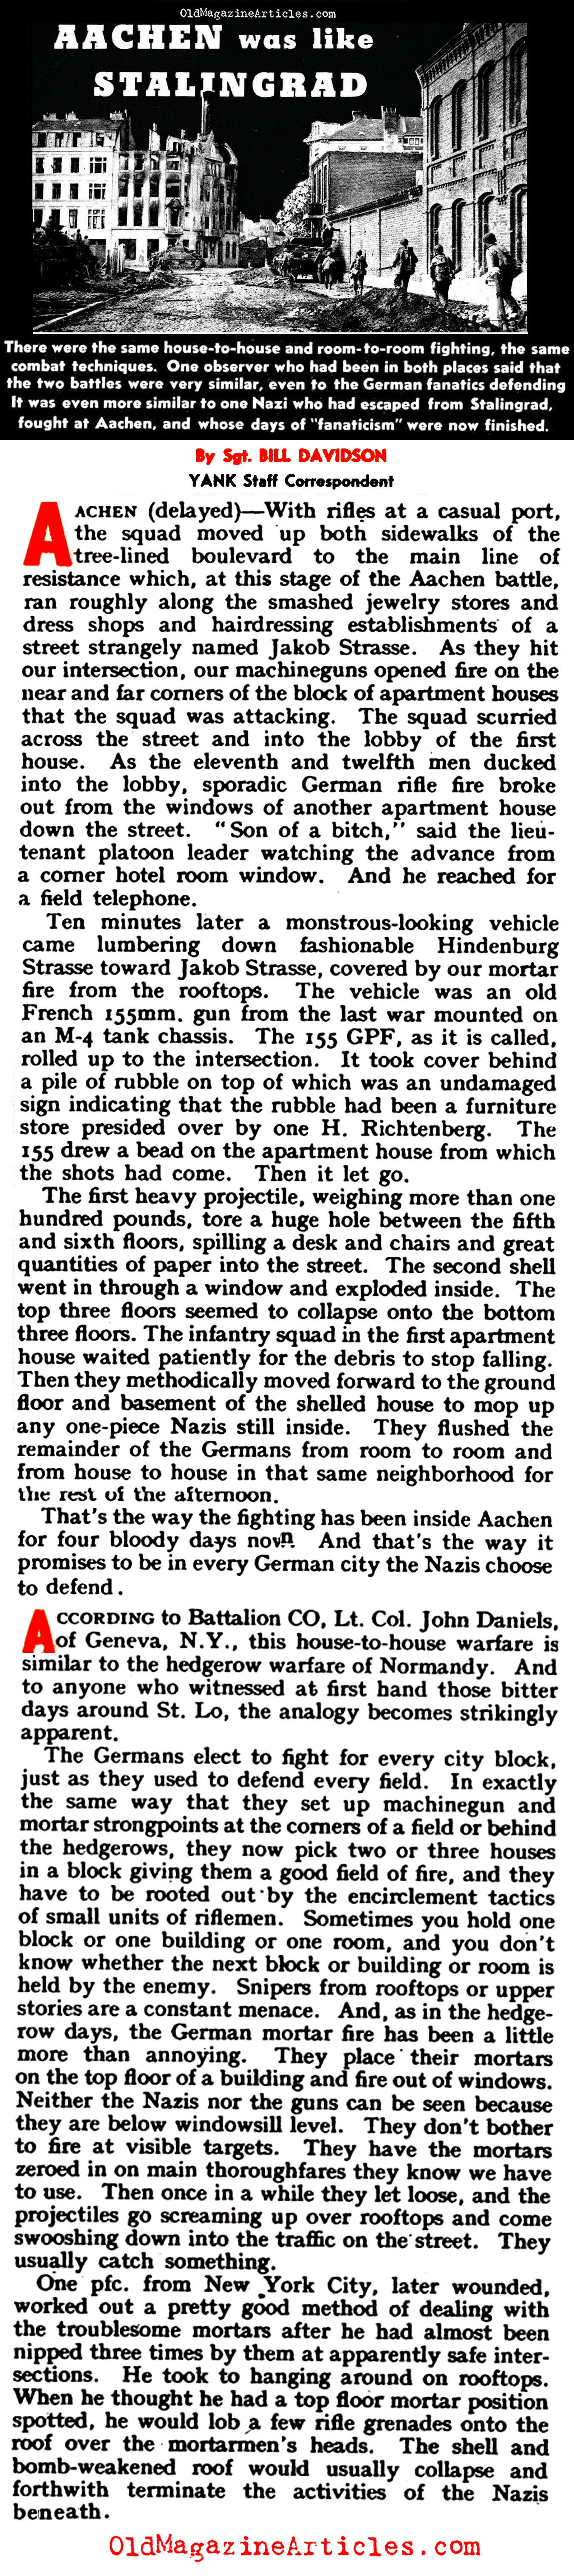 The Battle for Aachen (Yank Magazine, 1944)